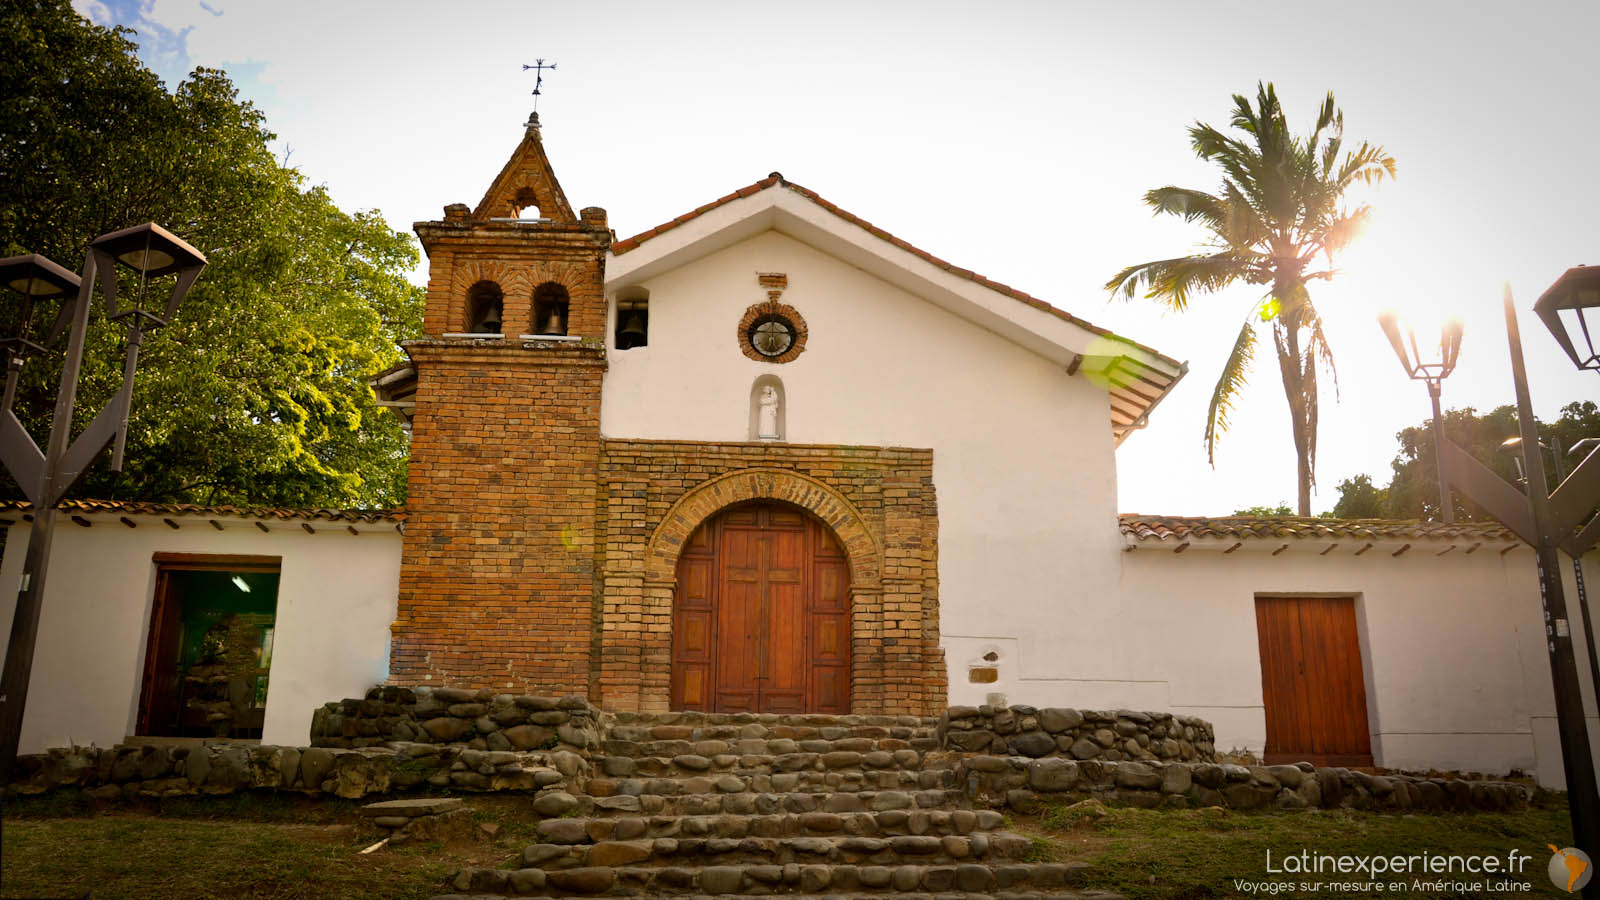 Colombie - ville de la salsa - San Antonio - Eglise coloniale - Latinexperience-voyages